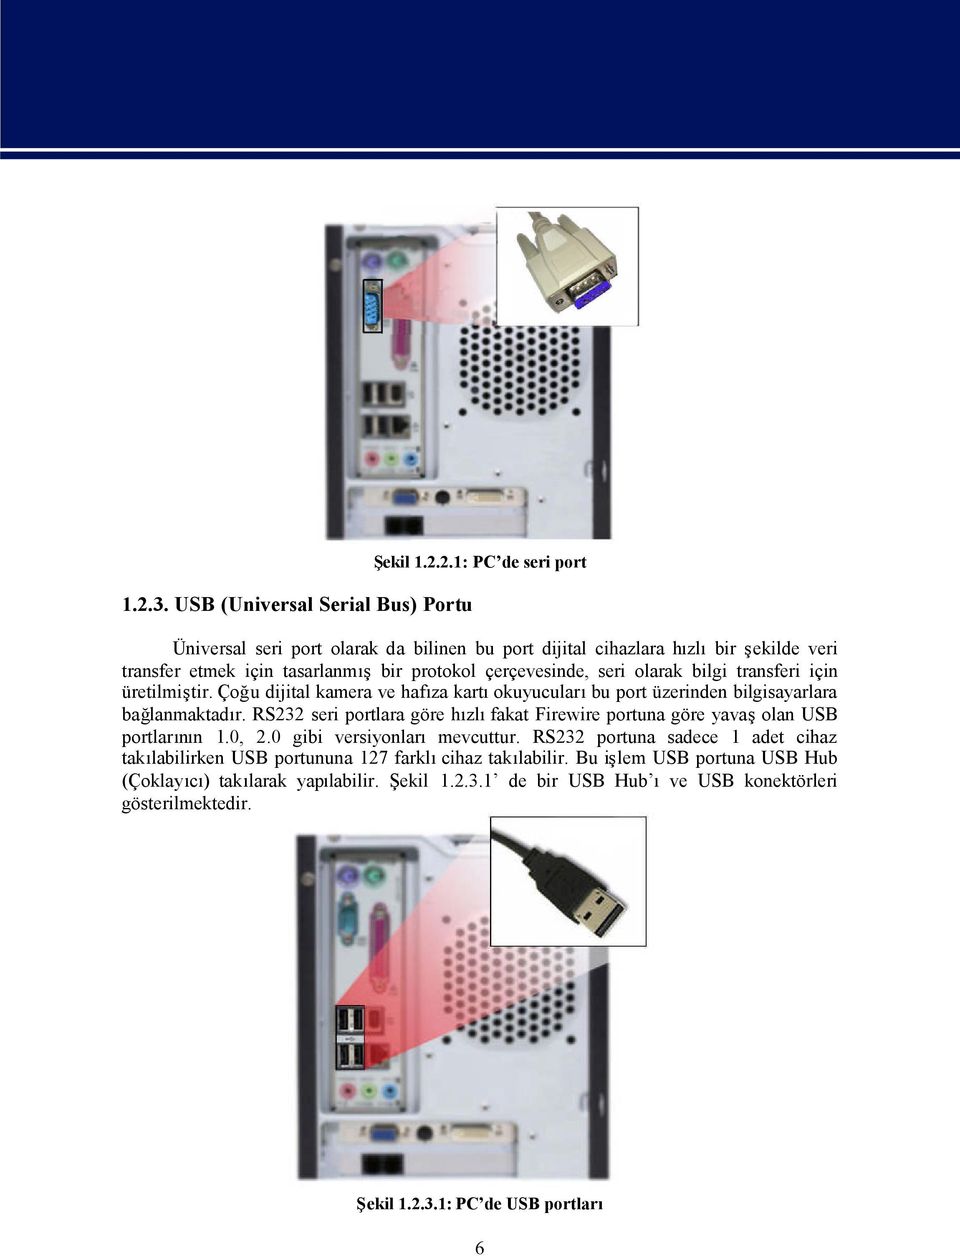 seri portlara göre hzlfakat Firewire portuna göre yavaolan USB portlarnn 1.0, 2.